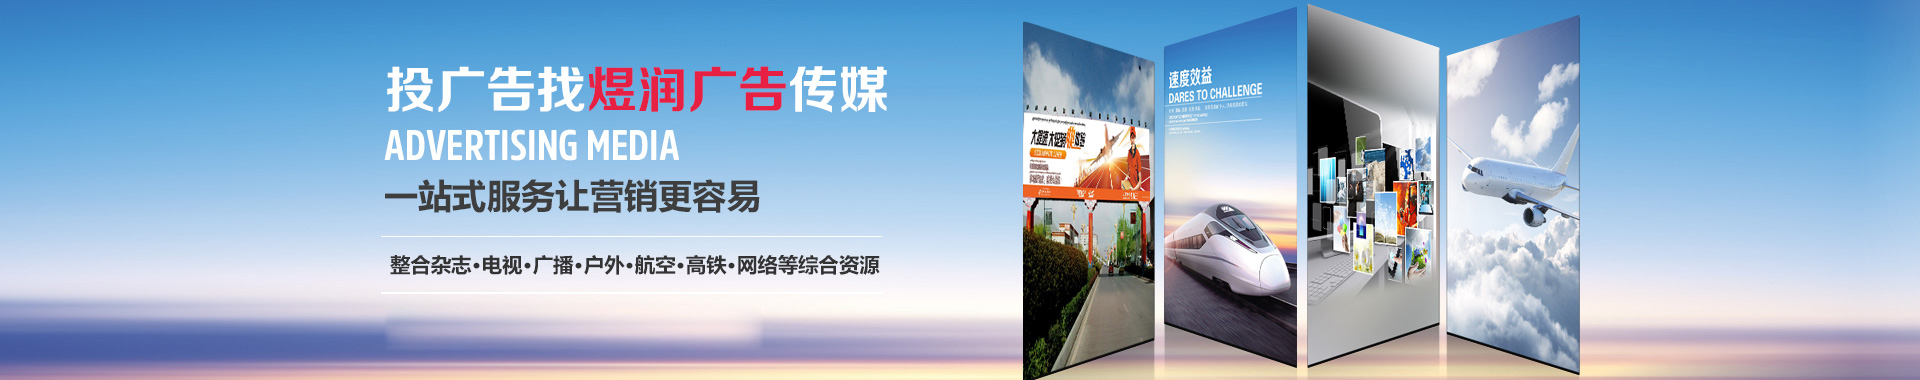 上海东方卫道广告投放,2020年广告刊例